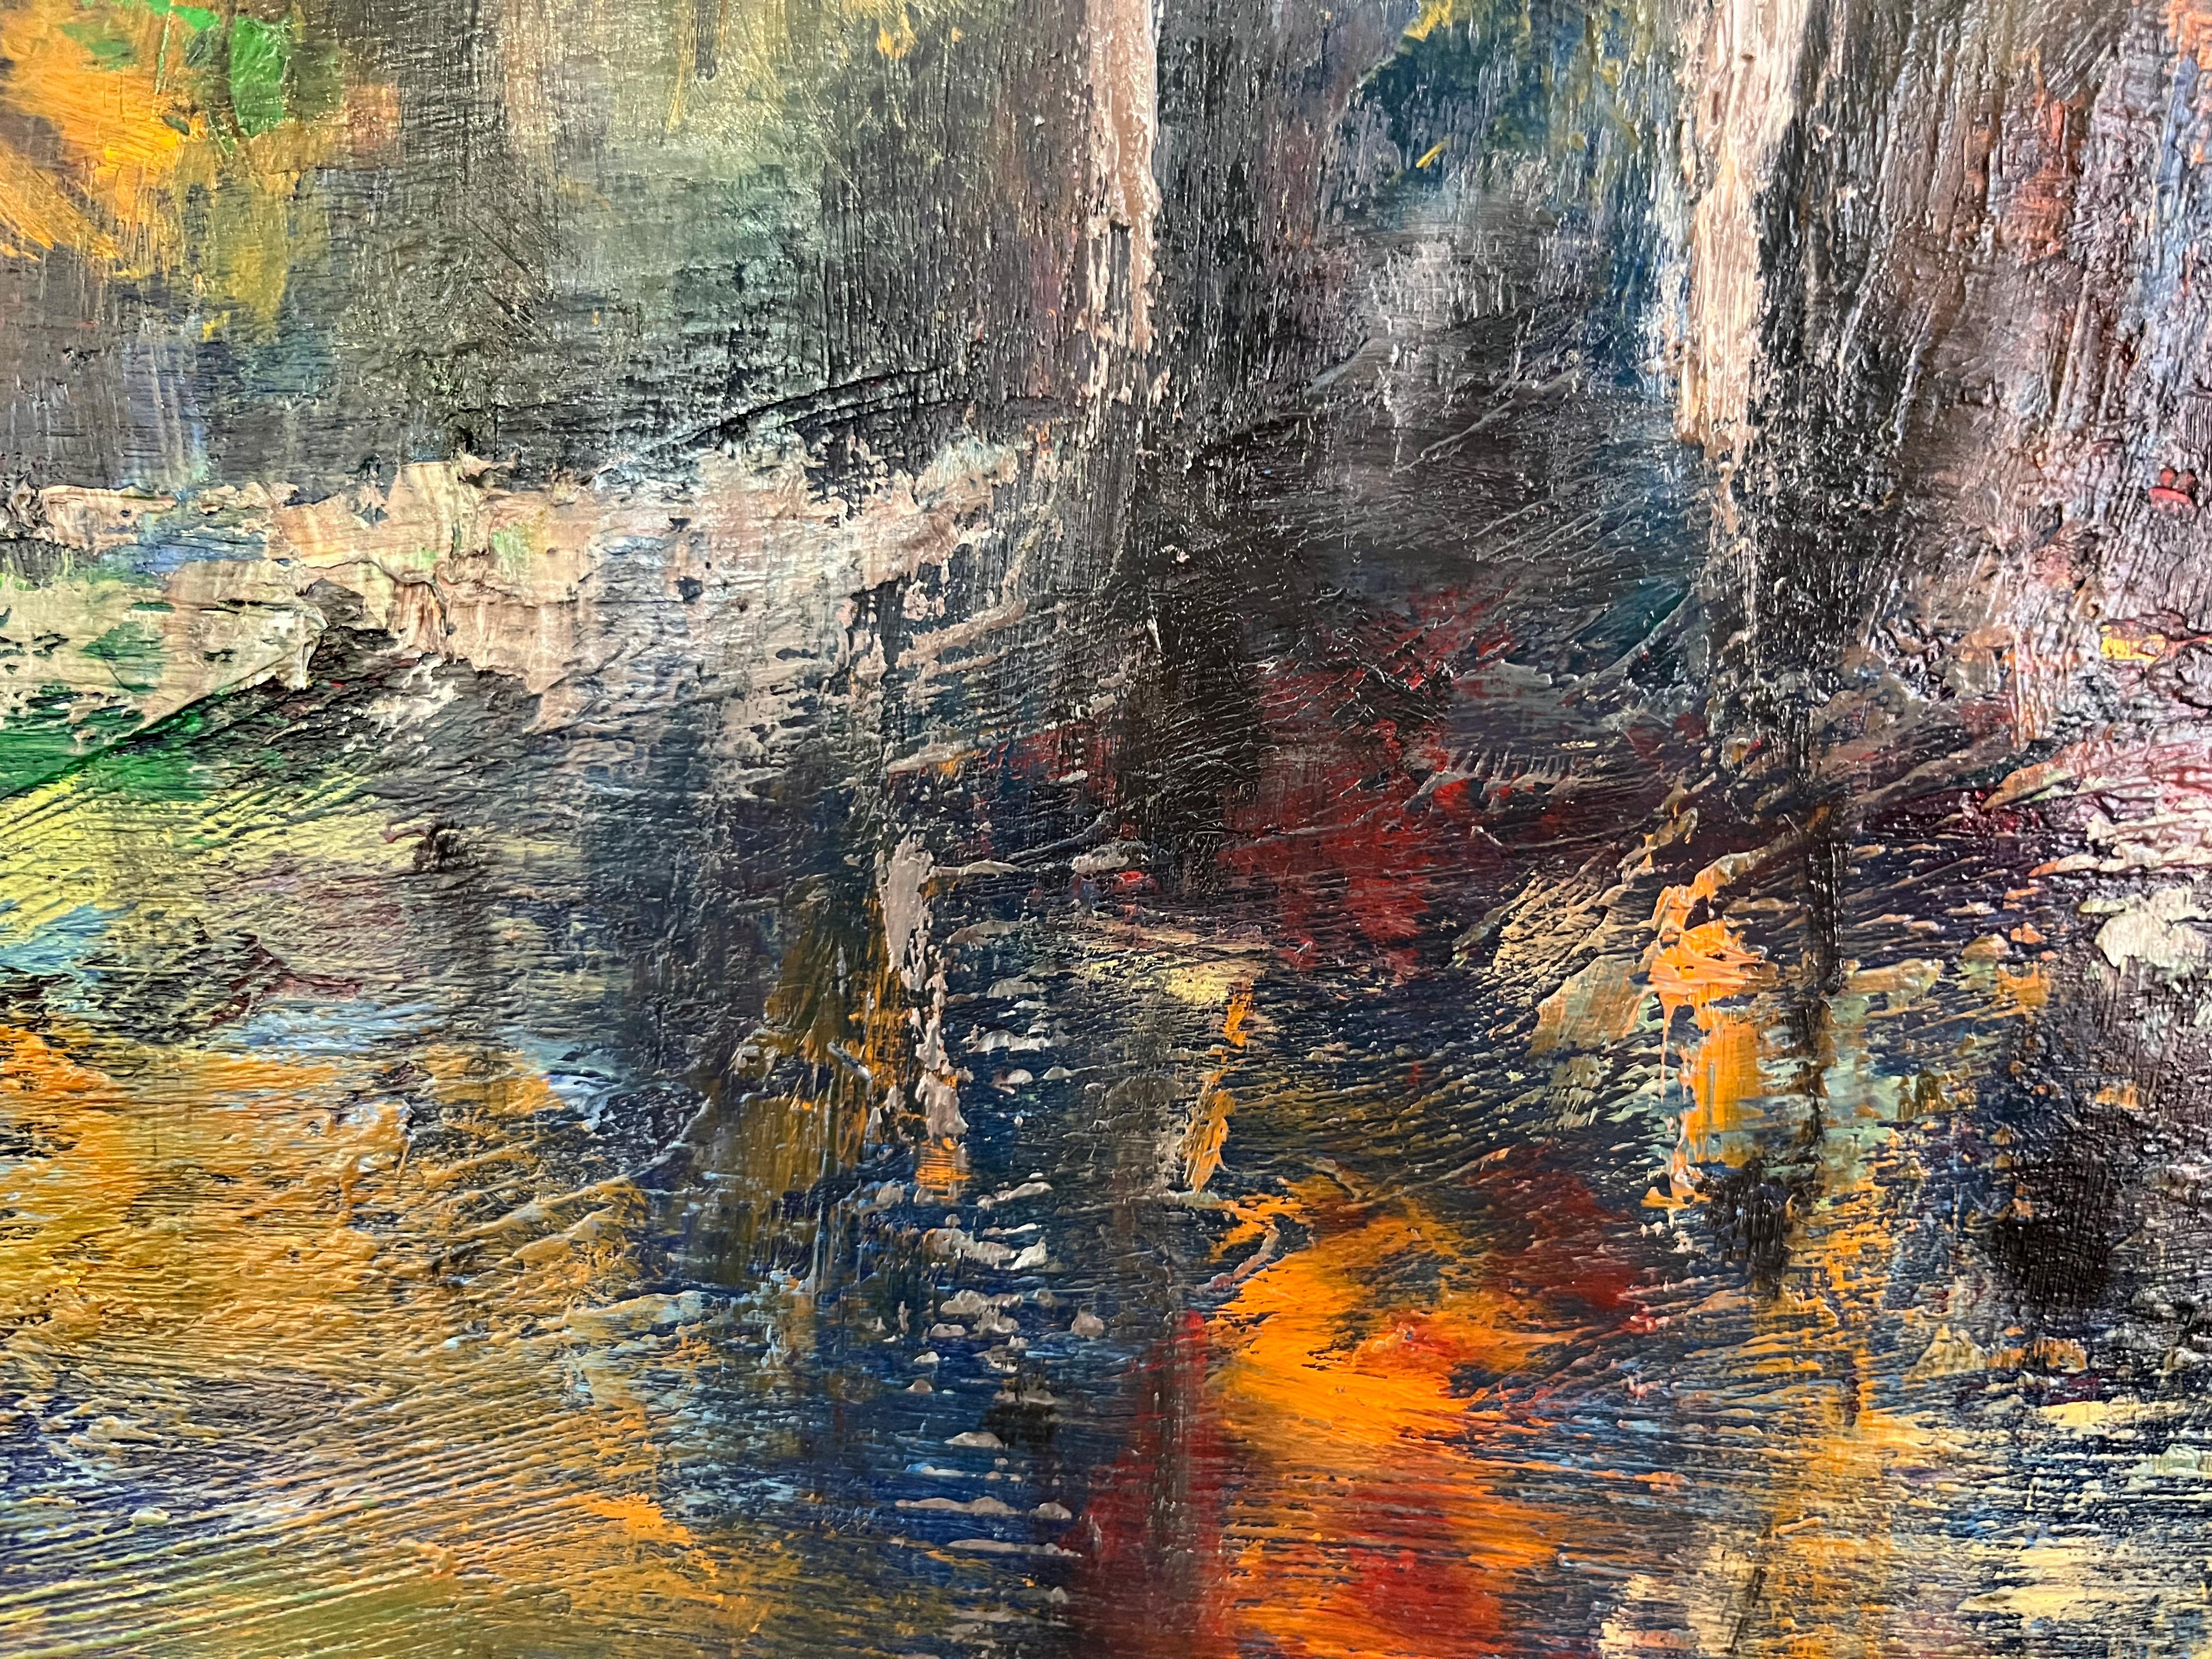 Un paysage serein peint à l'huile sur toile par l'artiste canadien Paul Chester. Vue typique d'un chalet, cette peinture aux tons chauds de bleu et d'orange est une belle représentation des lacs canadiens du nord de l'Ontario.

Utilisant